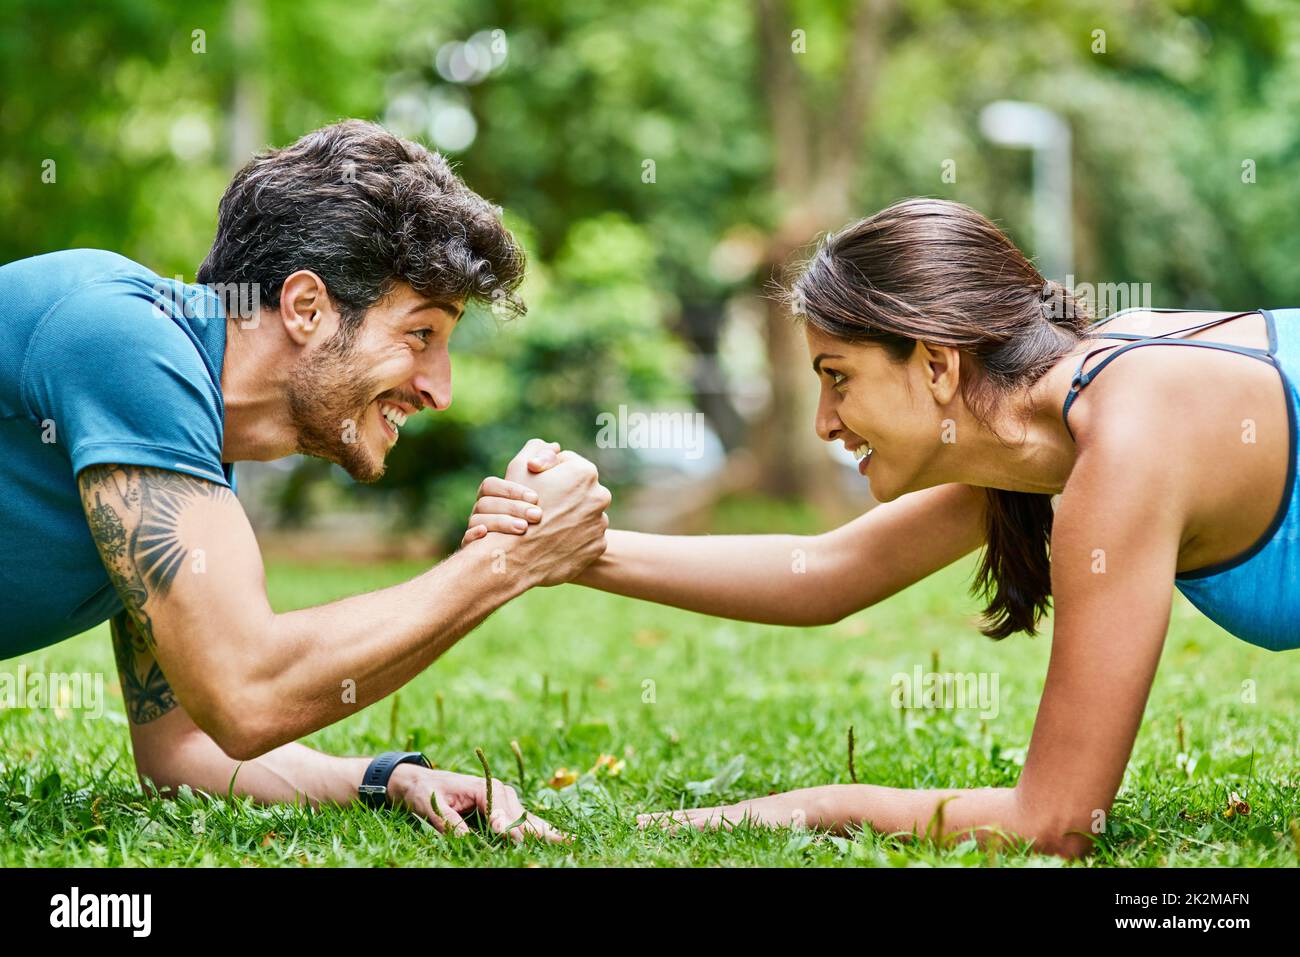 Sostenersi a vicenda verso uno stile di vita più sano. Scatto di una giovane coppia sportiva che si esercita insieme all'aperto. Foto Stock